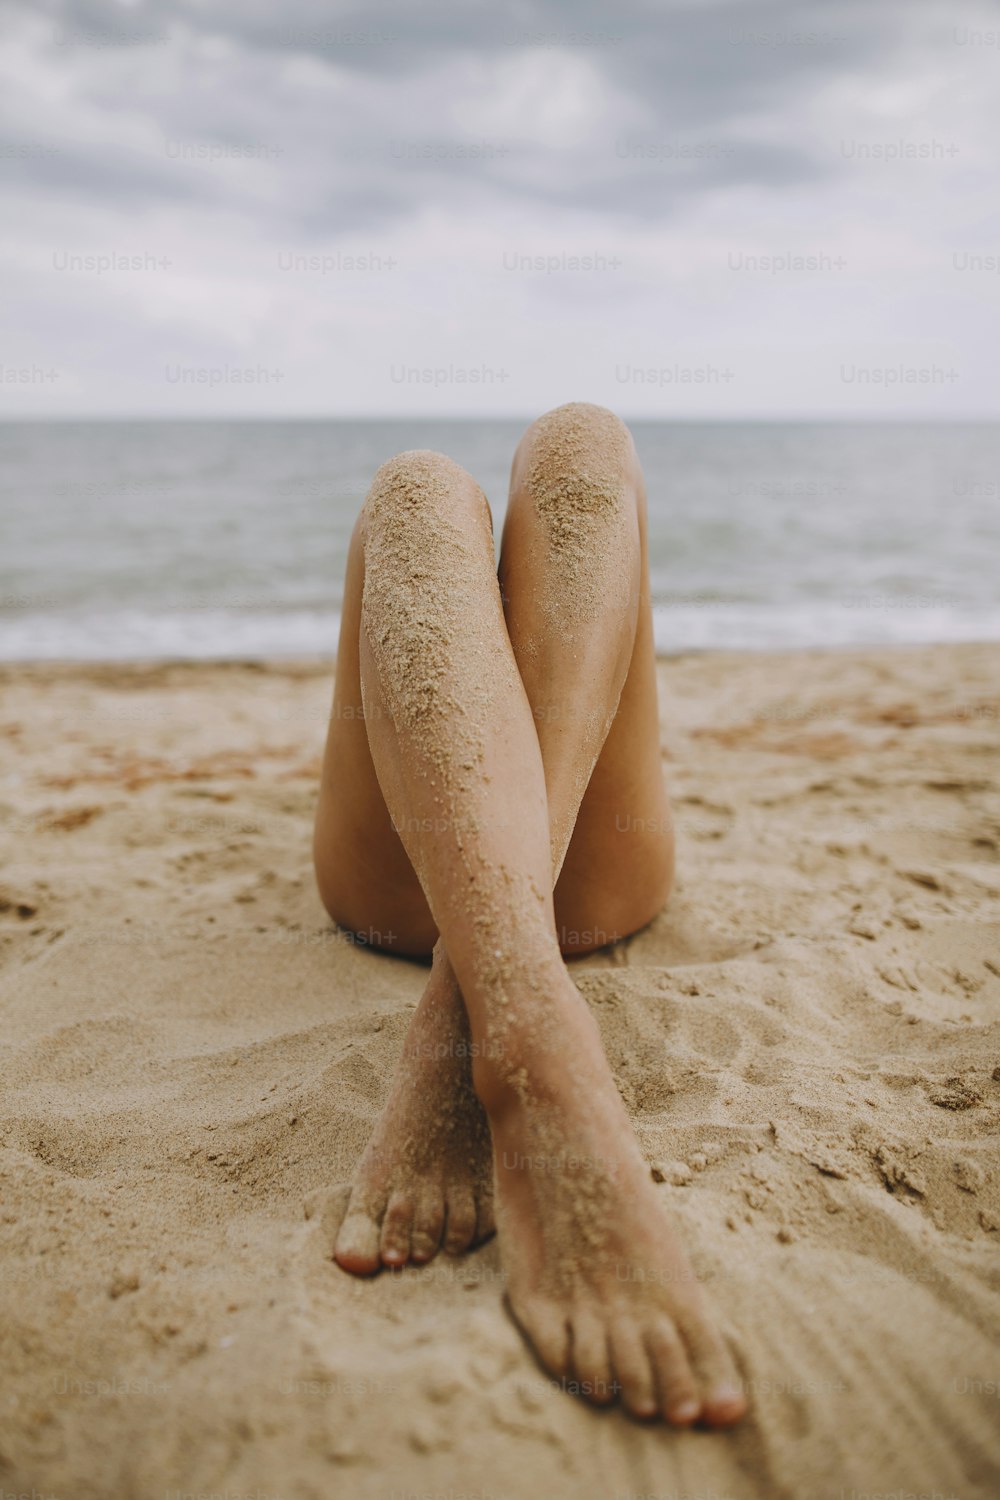 夏休み。なめらかな肌に砂を塗ったビーチの女の子の日焼けした足。美しく、本物で珍しい画像。海辺でくつろぐ若い女性。